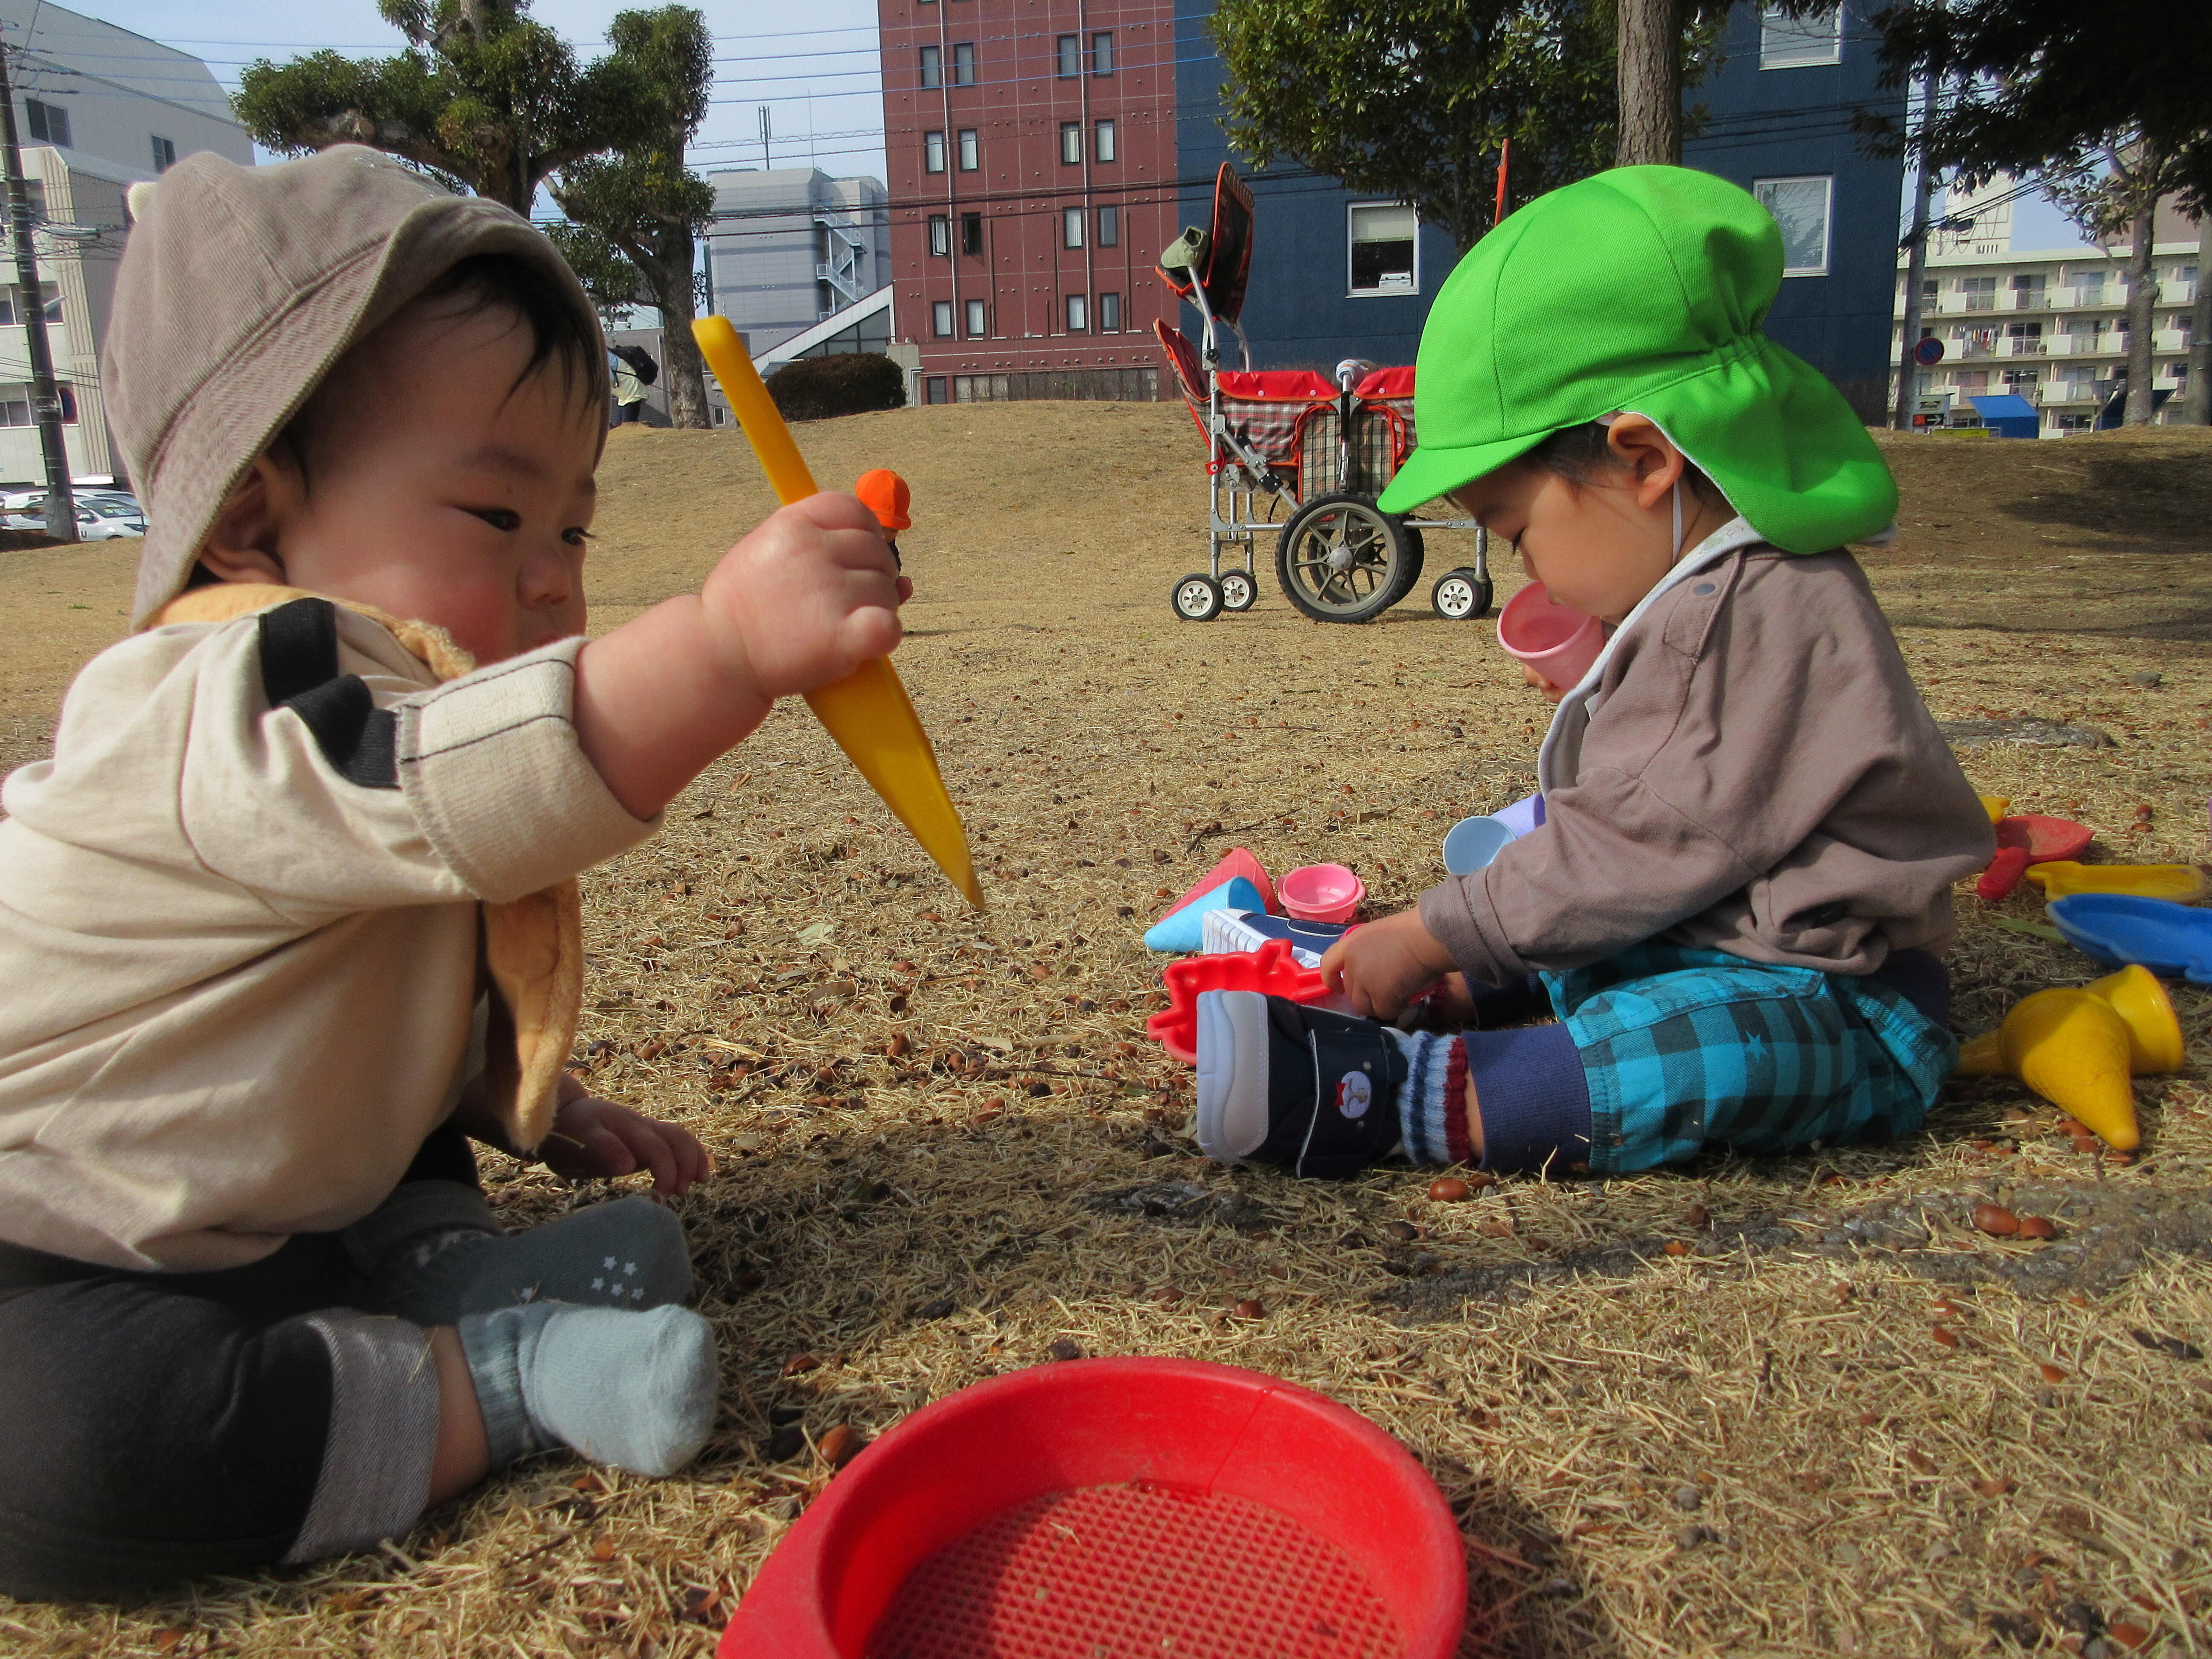 ぽかぽかの公園で、みんなで遊ぶの楽しいね～！